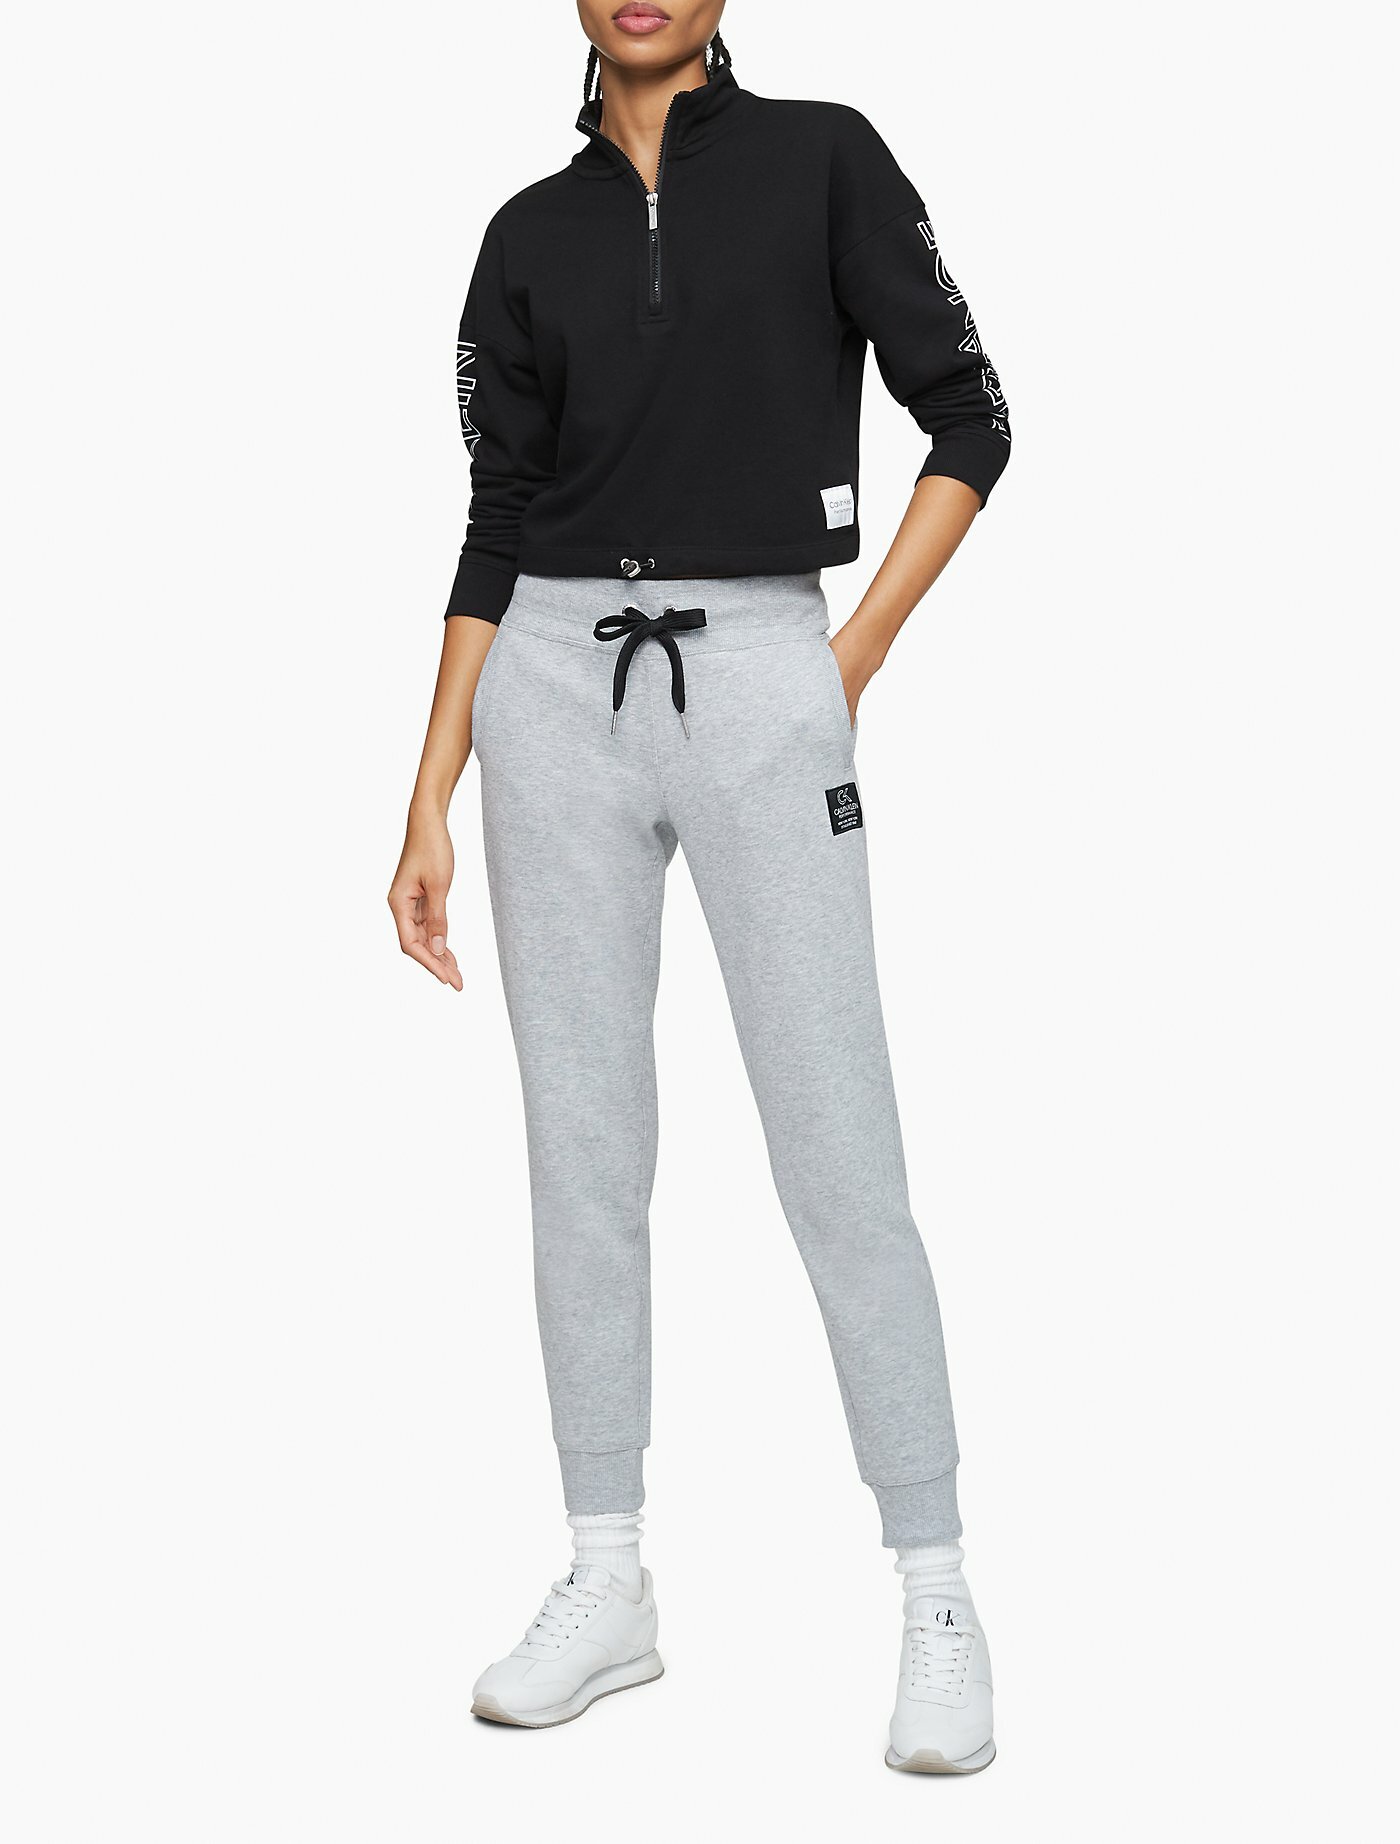 Спортивные брюки женские Calvin Klein pfcp6357 серые XL